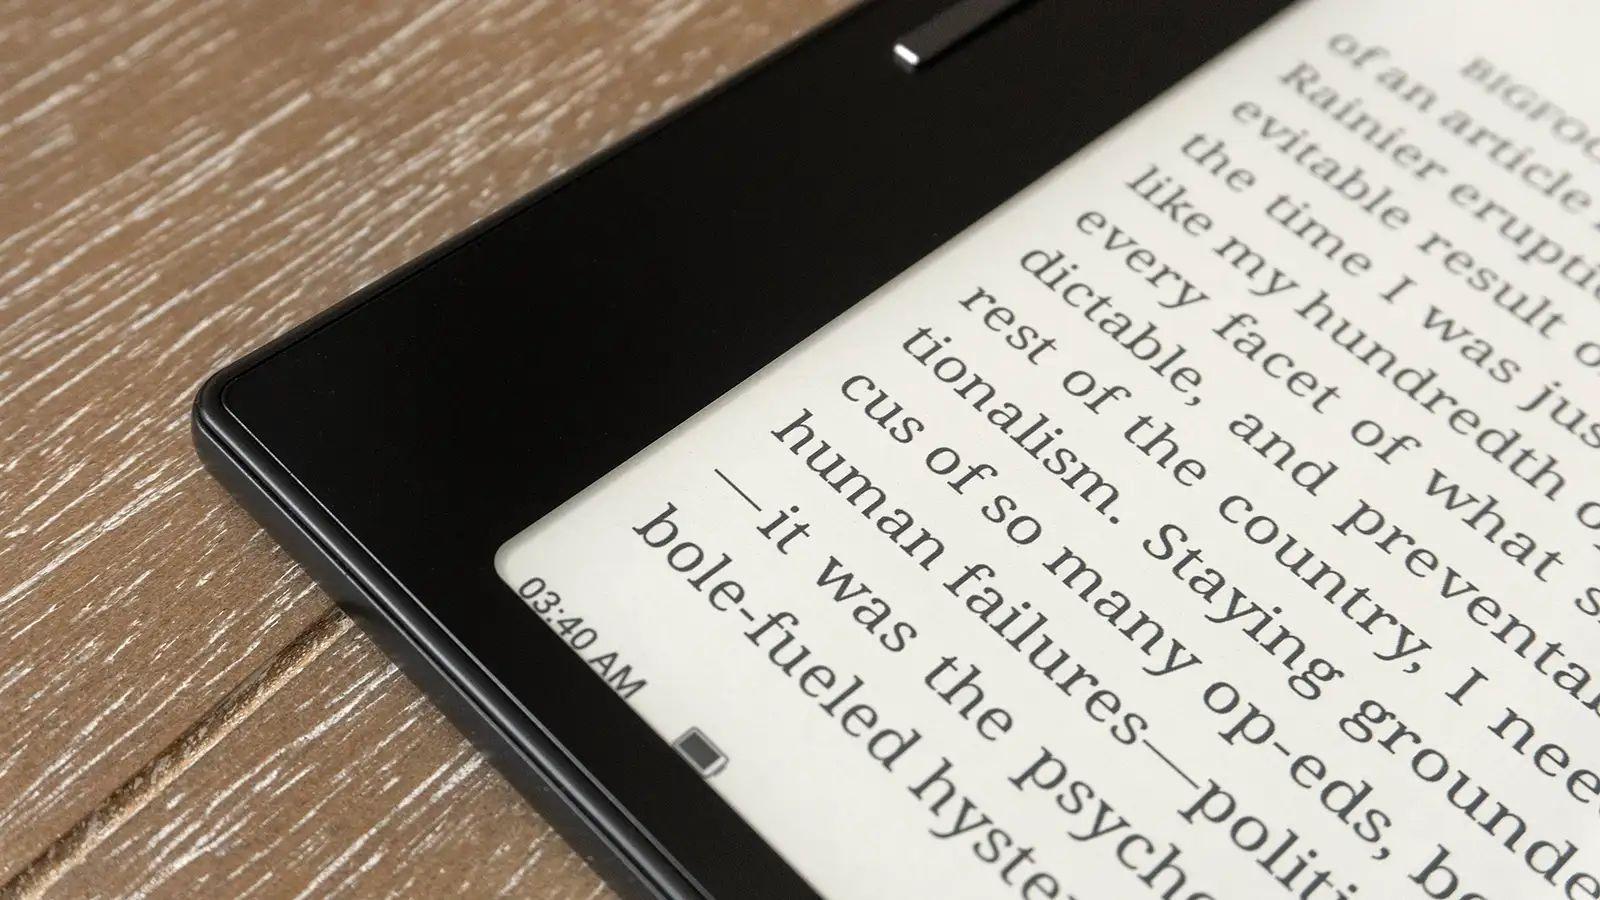 Kindleも他のアプリも入れられる電子書籍リーダー｢Onyx Boox Leaf 2